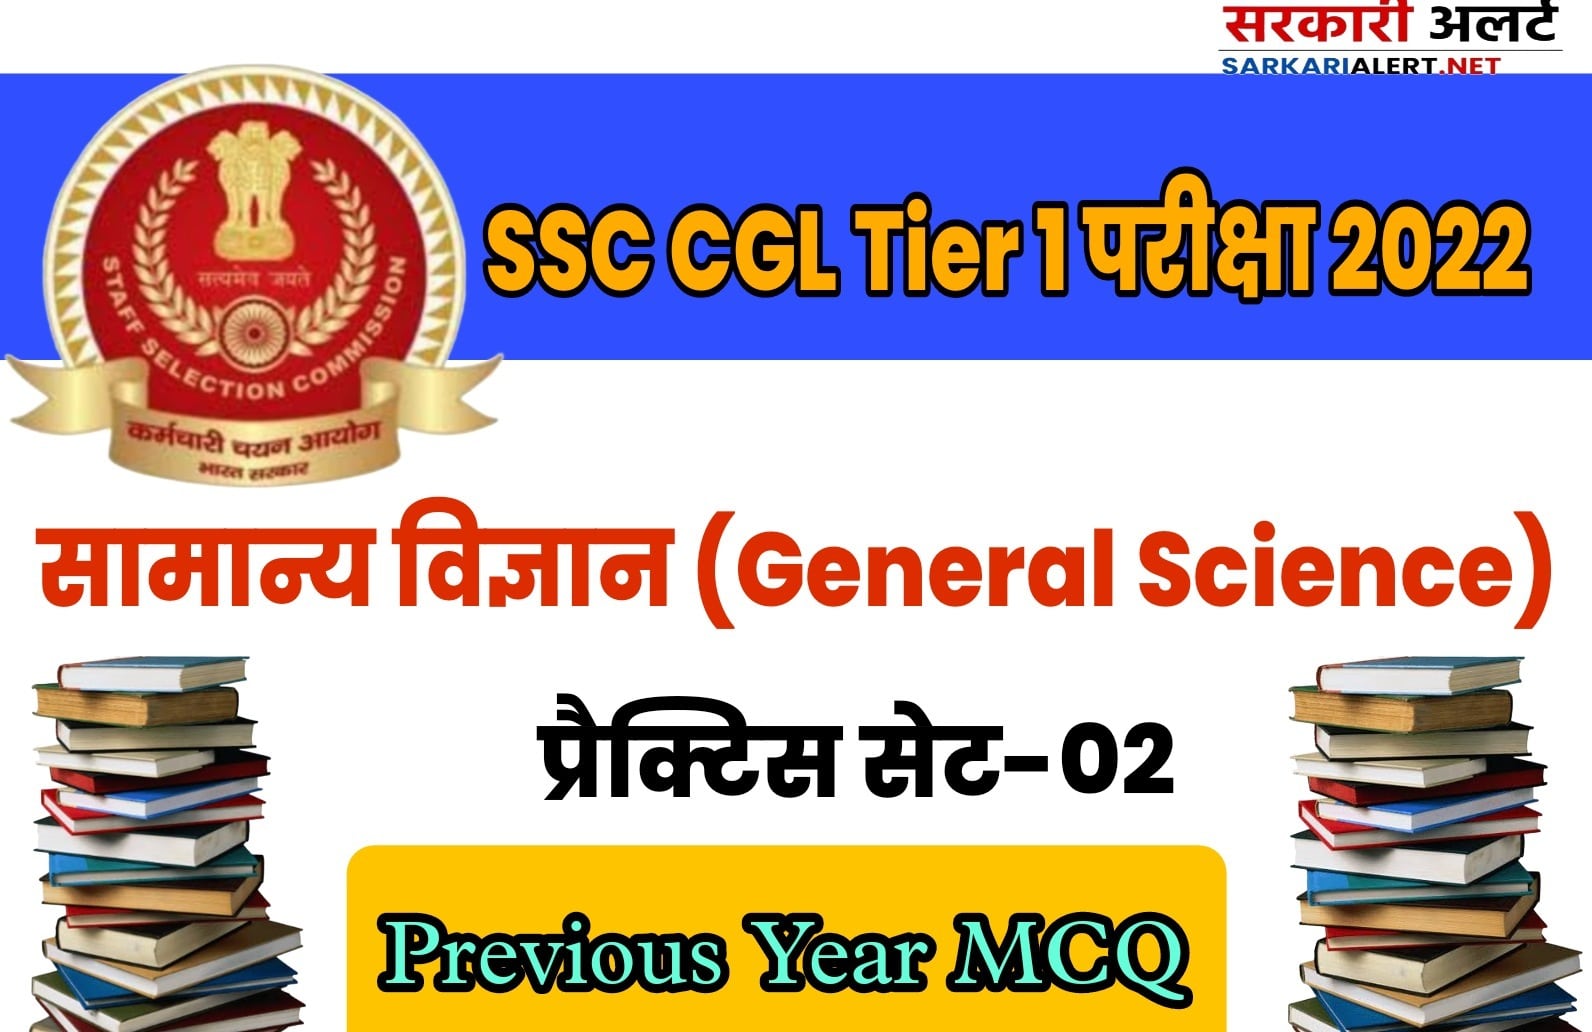 SSC CGL Tier I Exam 2022 GS Practice Set 02 | प्रीवियस ईयर के महत्वपूर्ण प्रश्नों के सॉल्यूशन के साथ अध्ययन करना न भूलें